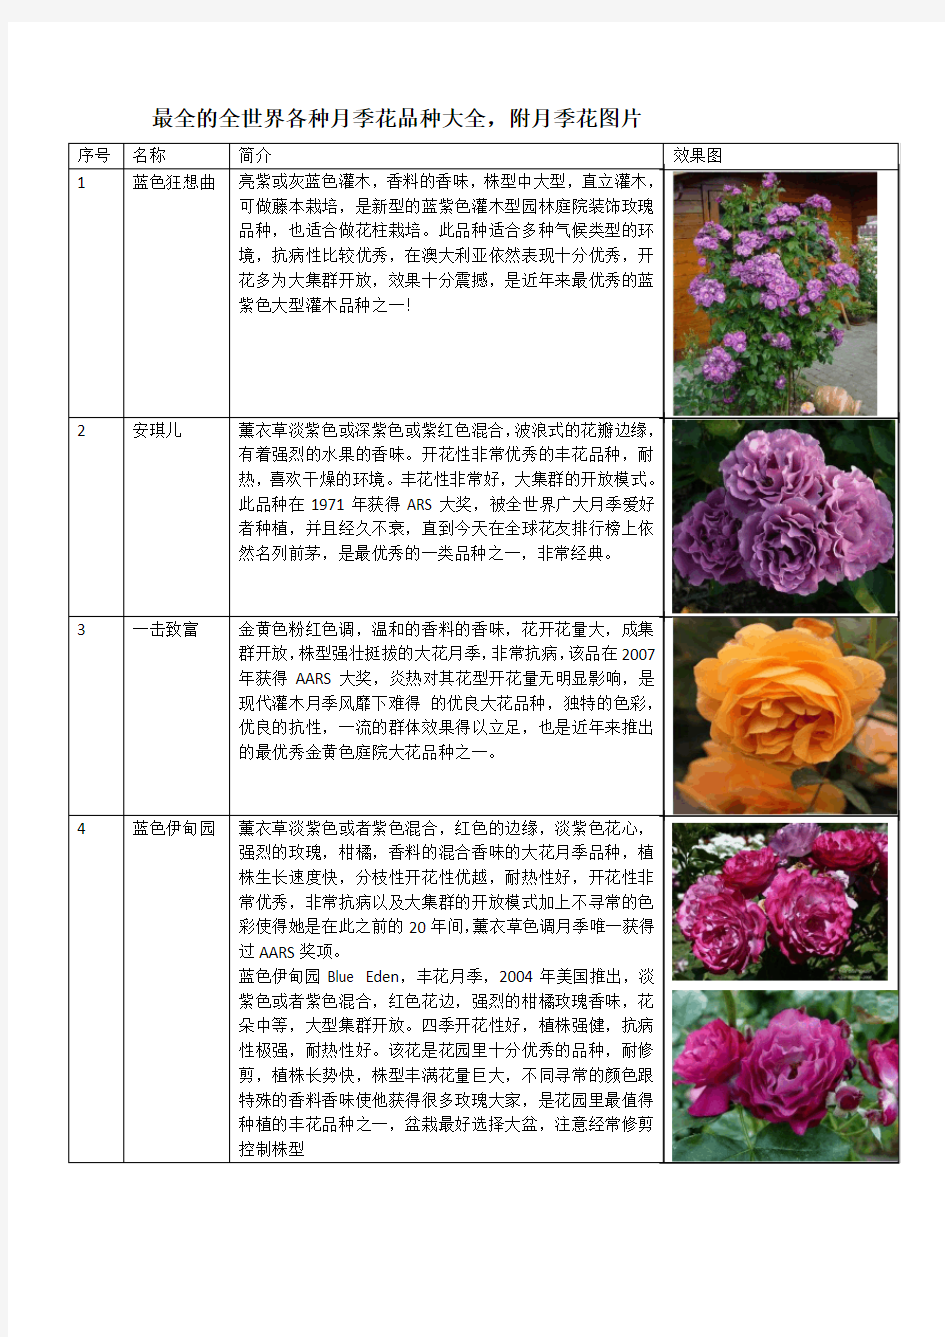 最全的全世界各种月季花品种大全,附月季花图片